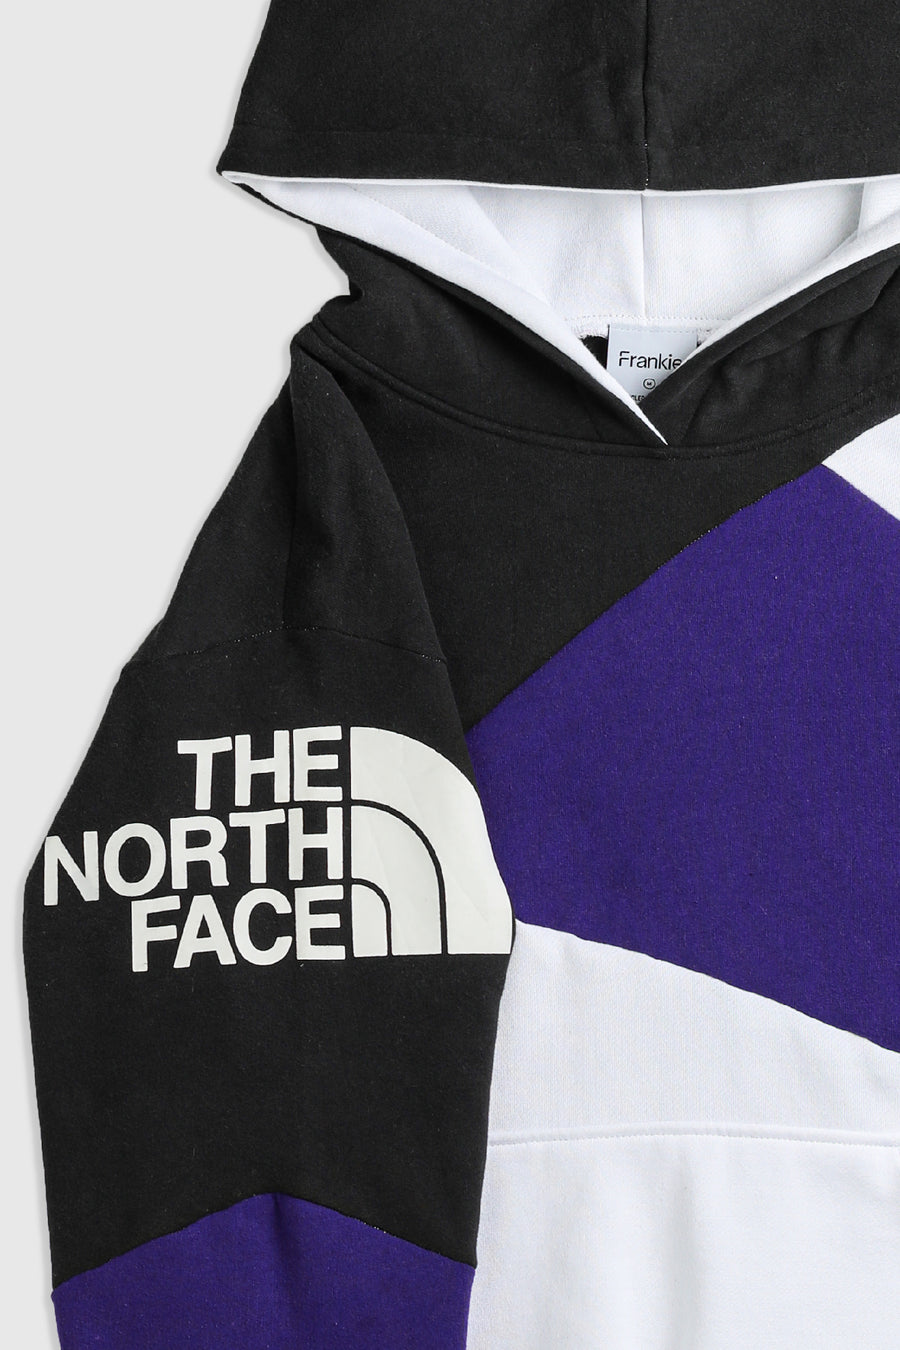 Rework North Face Patchwork Sweatshirt - M – Frankie Collective